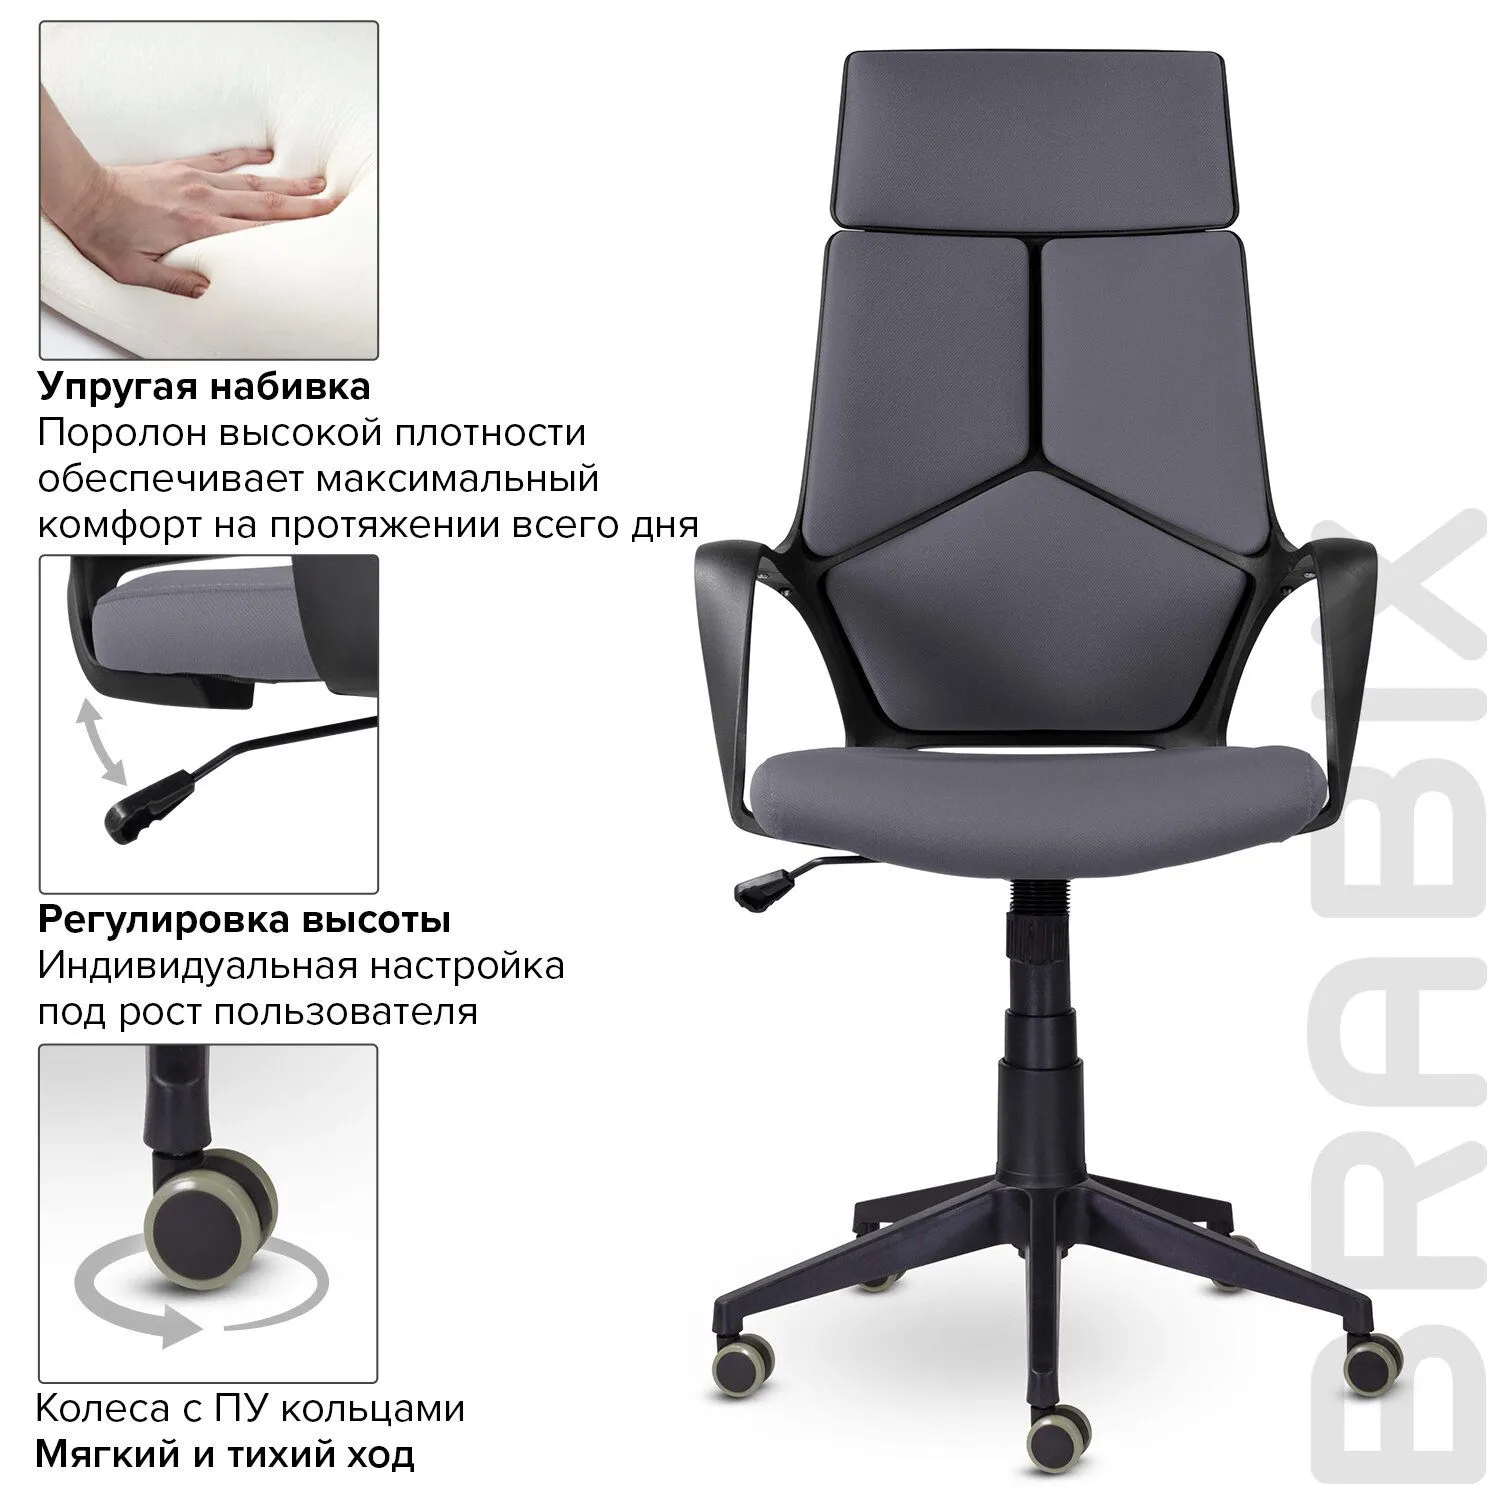 Кресло офисное BRABIX PREMIUM Prime EX-515 ткань серый 532548